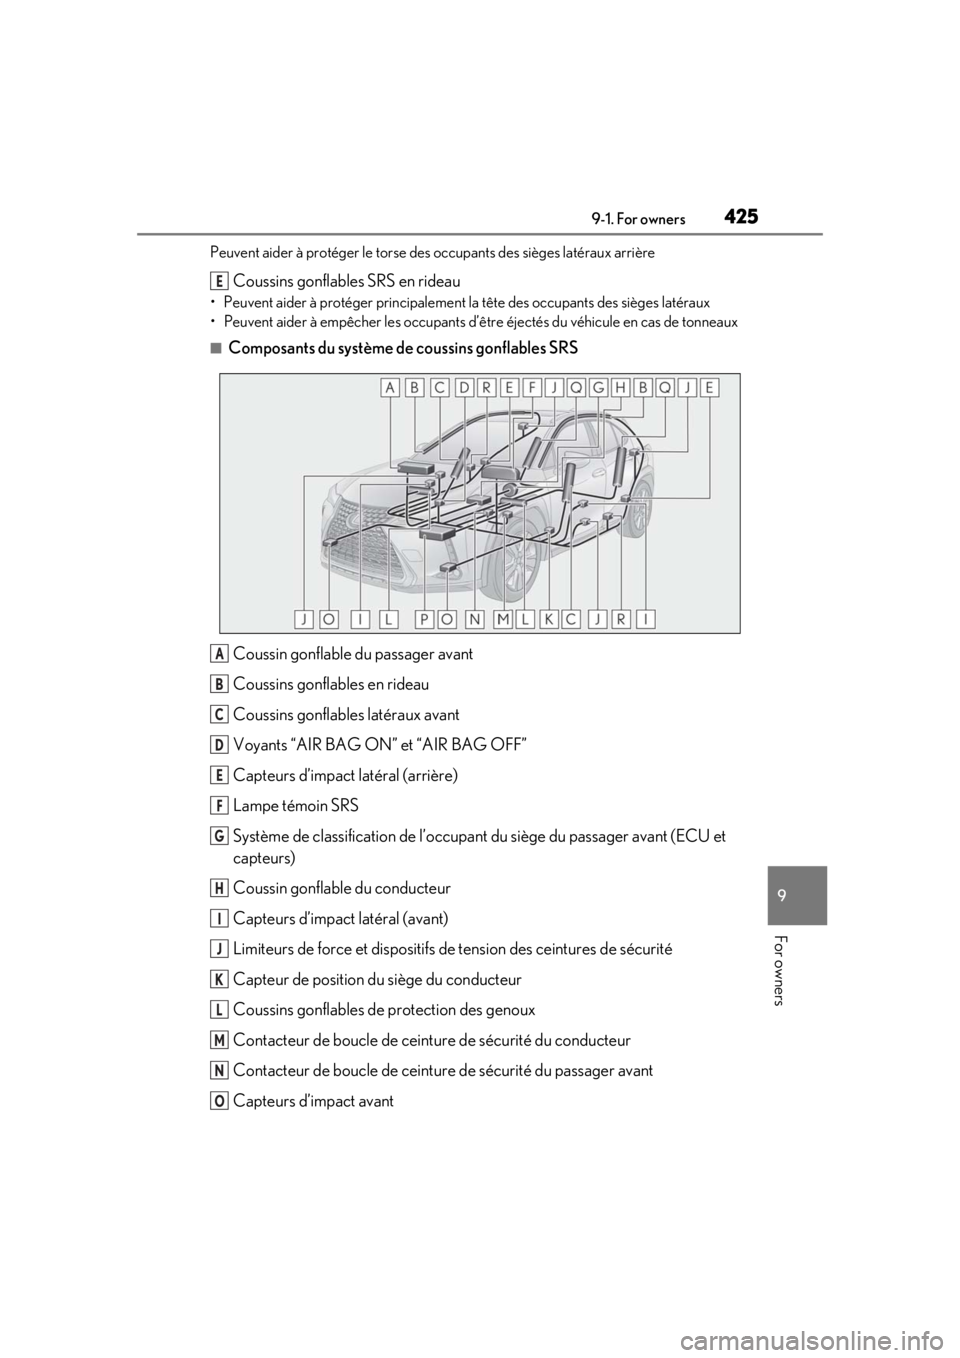 LEXUS UX200 2019  Owners Manual 4259-1. For owners
9
For owners
Peuvent aider à protéger le torse des occupants des sièges latéraux arrière
Coussins gonflables SRS en rideau
• Peuvent aider à protéger principalement la têt